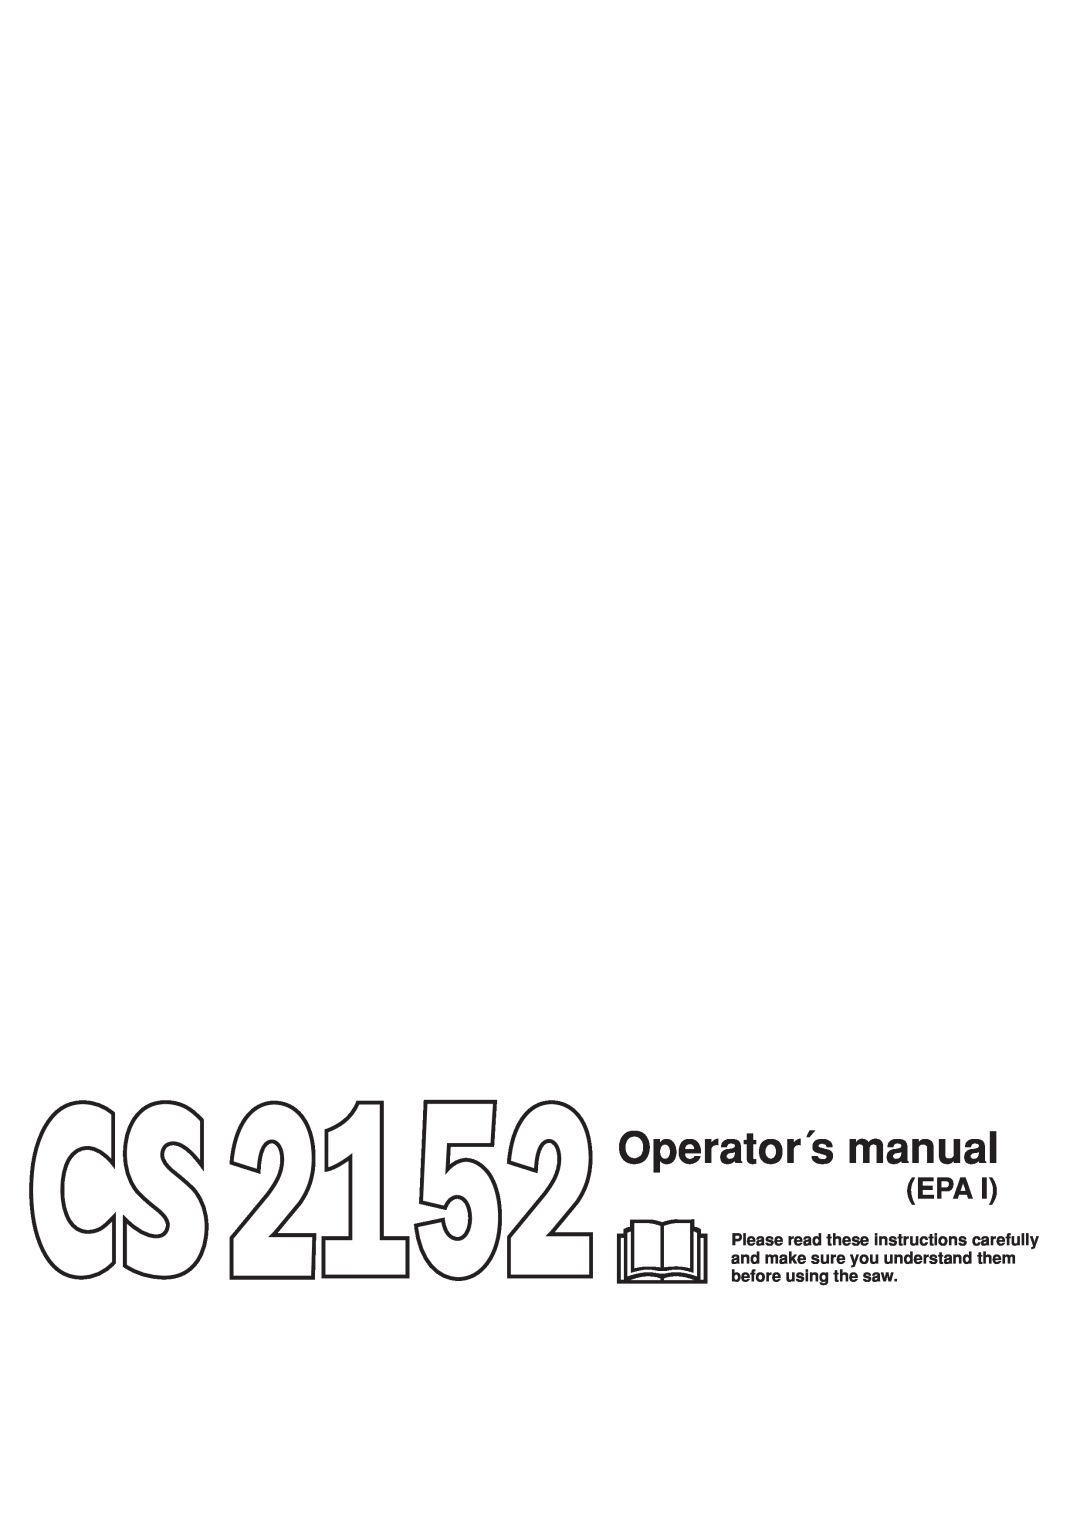 Jonsered CS 2152 manual Operator´s manual 